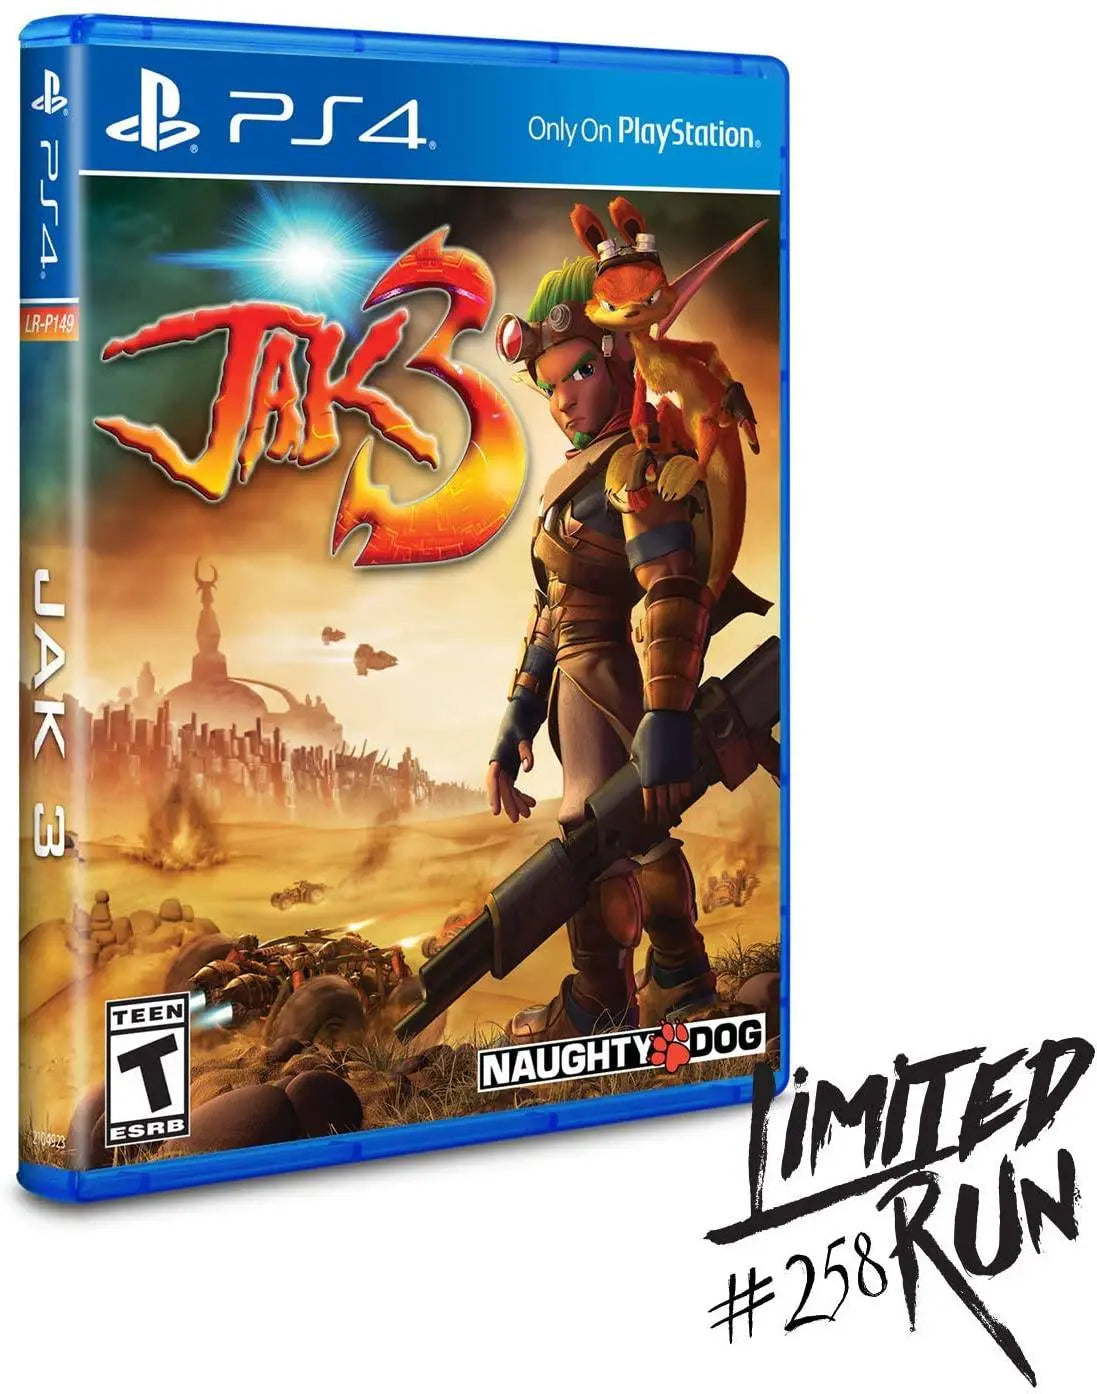 RARE: Jak 3 (PS4) - Playstation 4 - Limited Run King Gaming